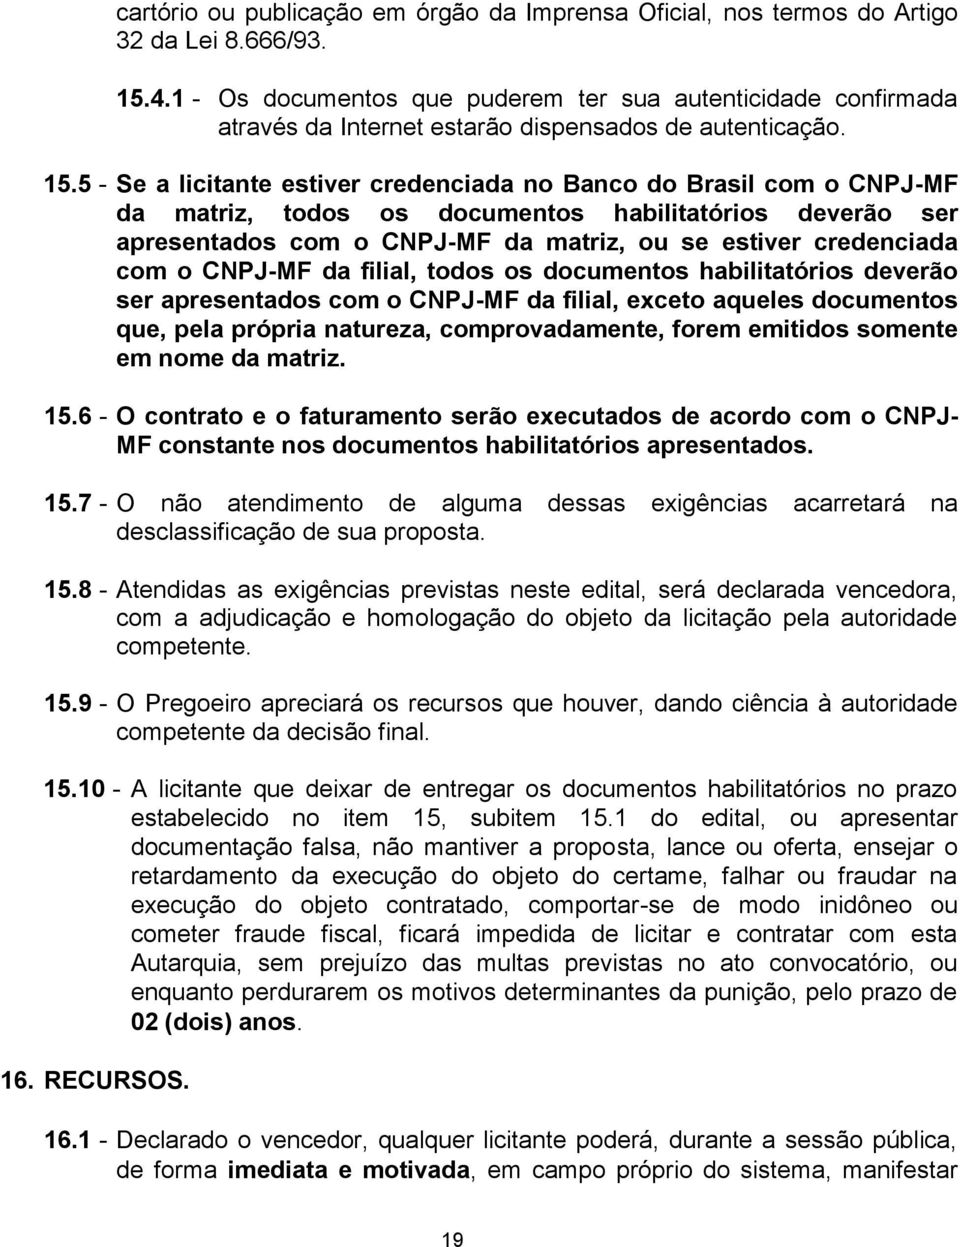 5 - Se a licitante estiver credenciada no Banco do Brasil com o CNPJ-MF da matriz, todos os documentos habilitatórios deverão ser apresentados com o CNPJ-MF da matriz, ou se estiver credenciada com o